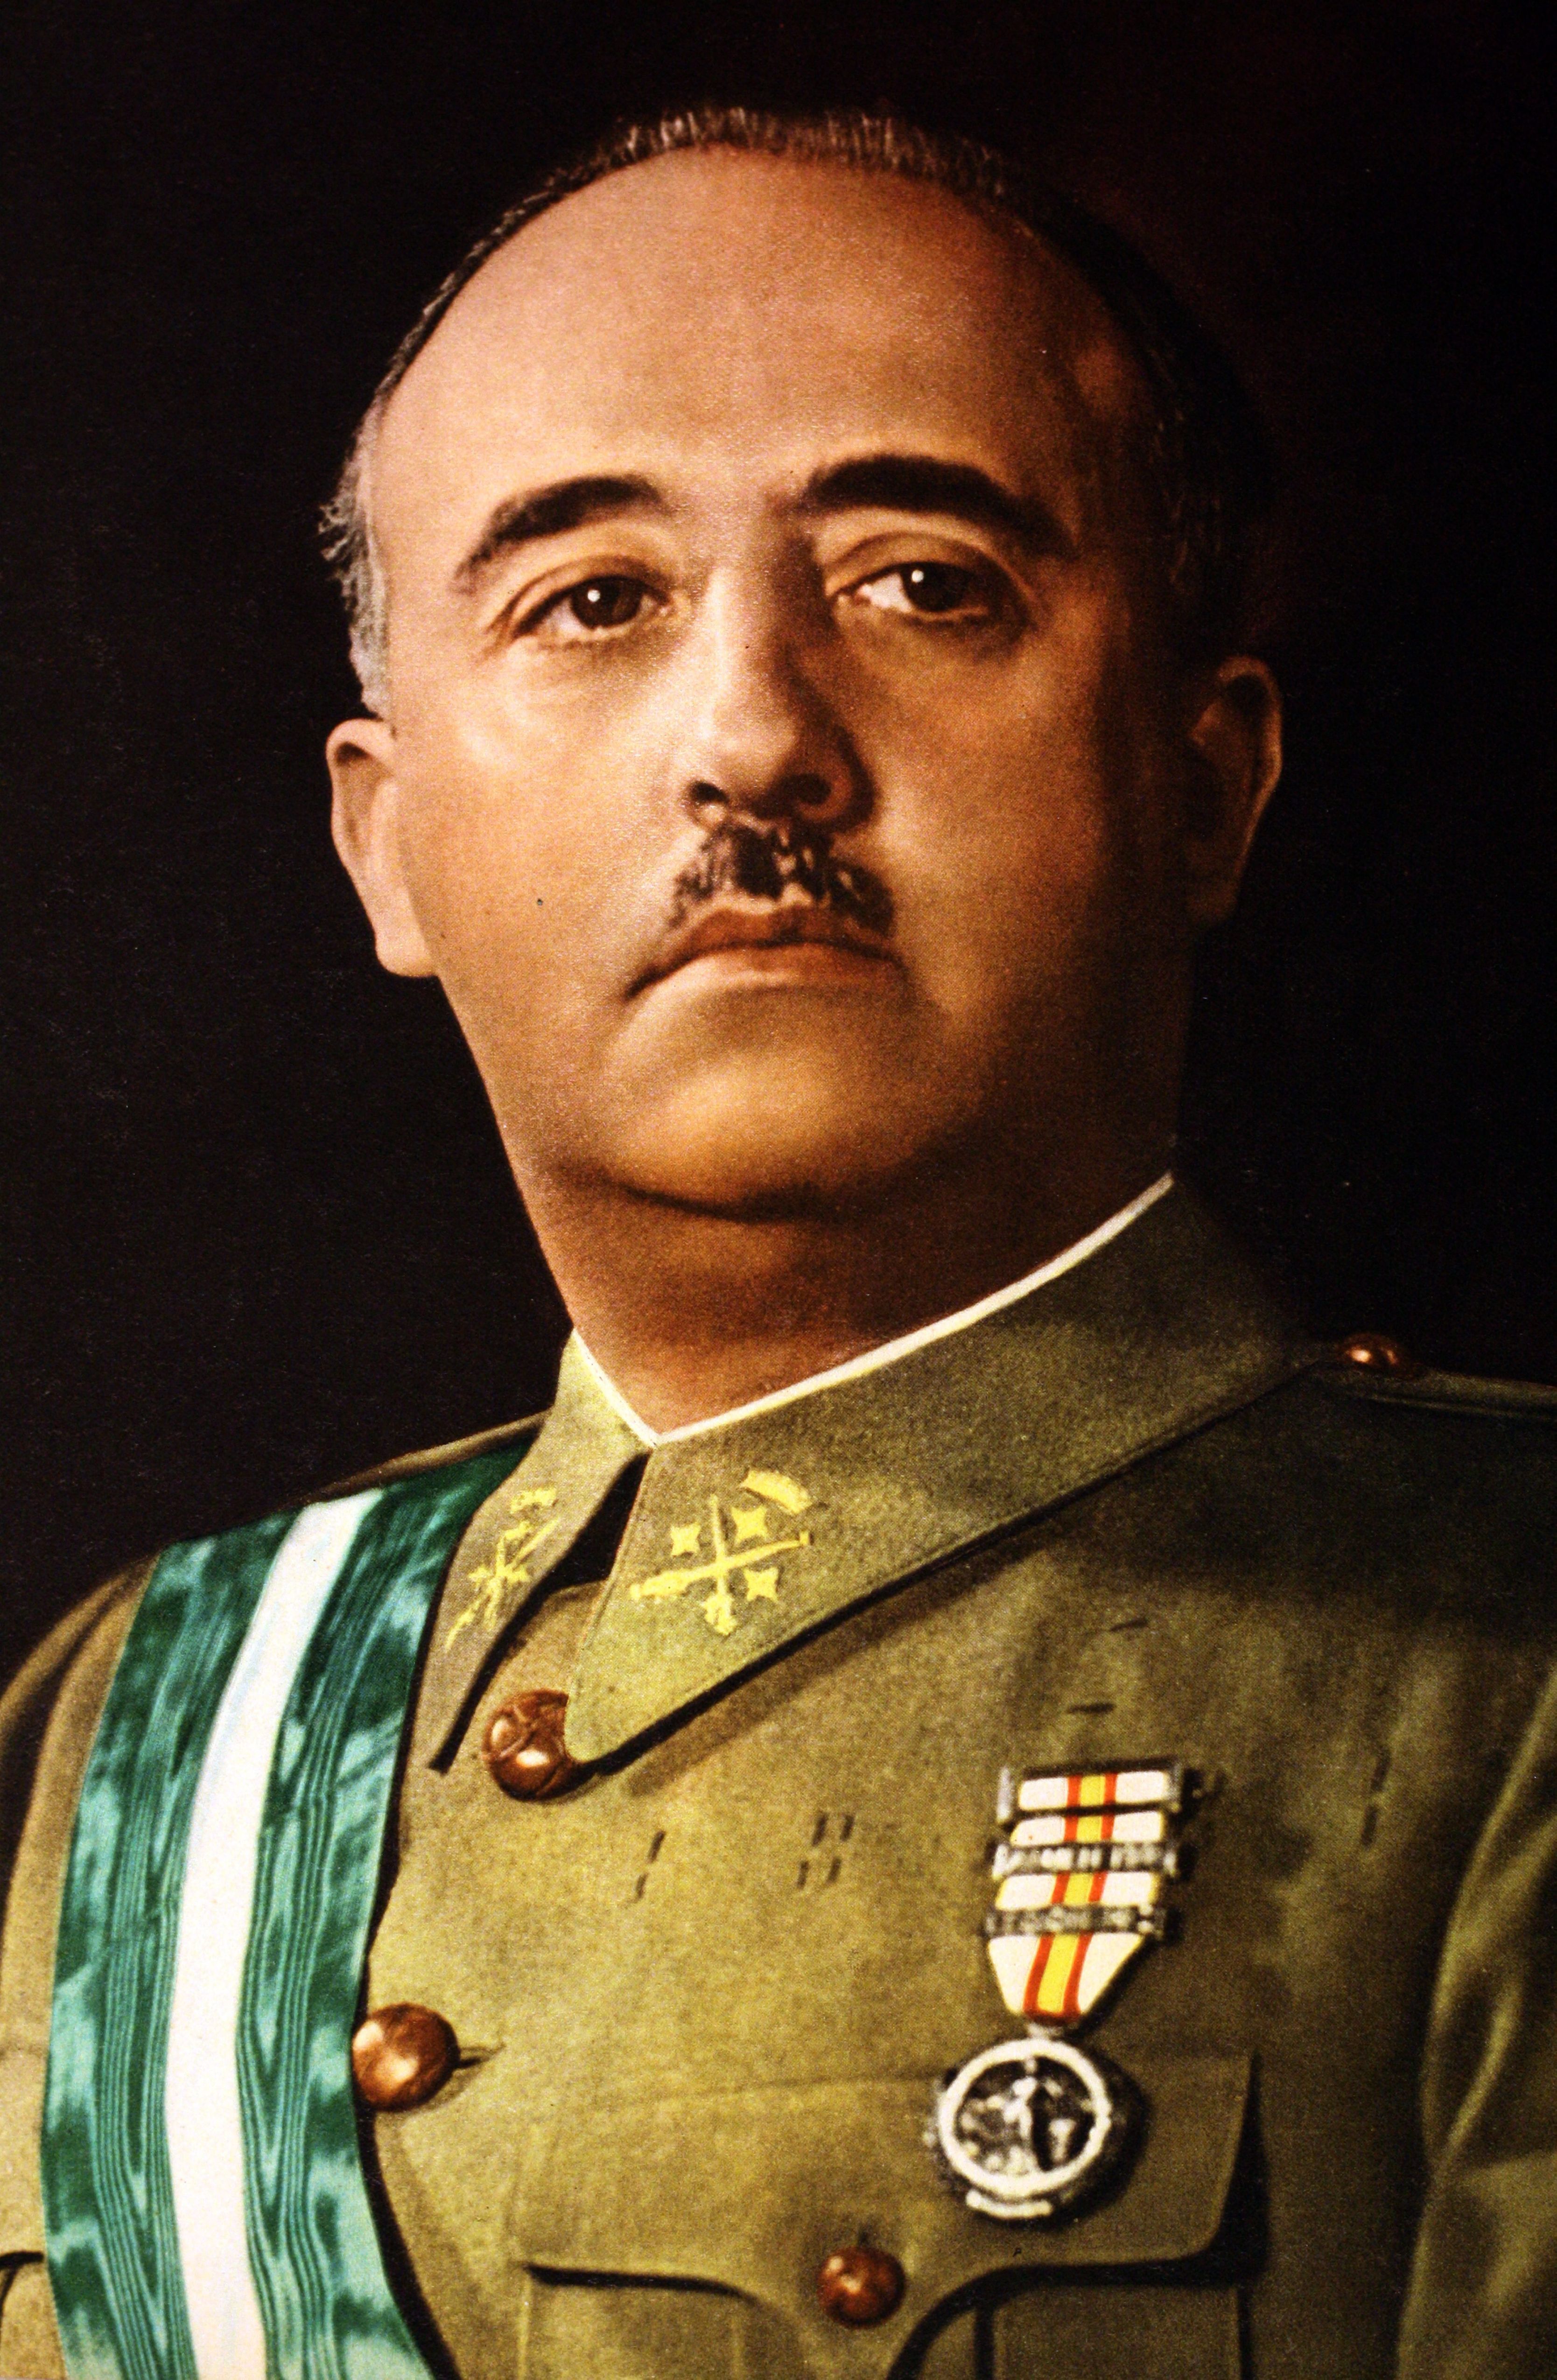 Retrato fotográfico de Francisco Franco, líder militar español y estadista que se convirtió en el dictador de España. | Foto: Getty Images